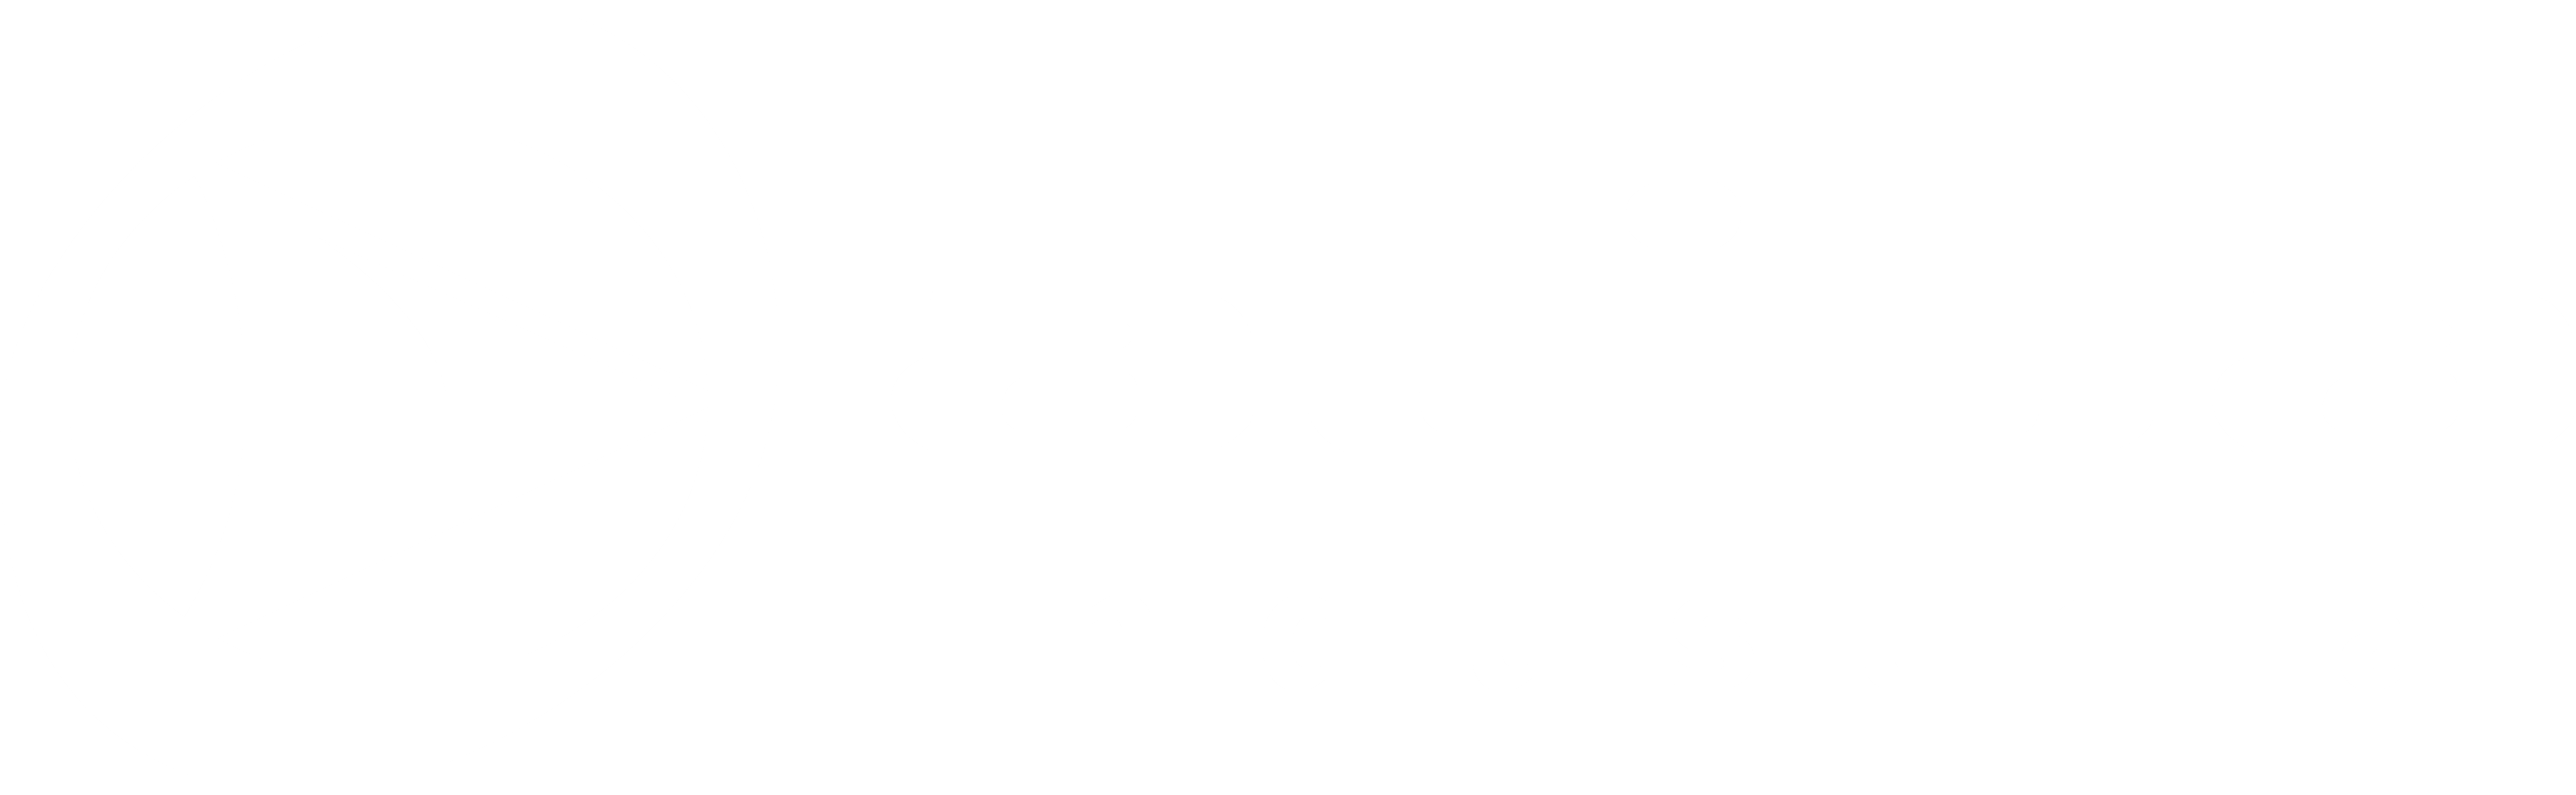 Ativa Industrial